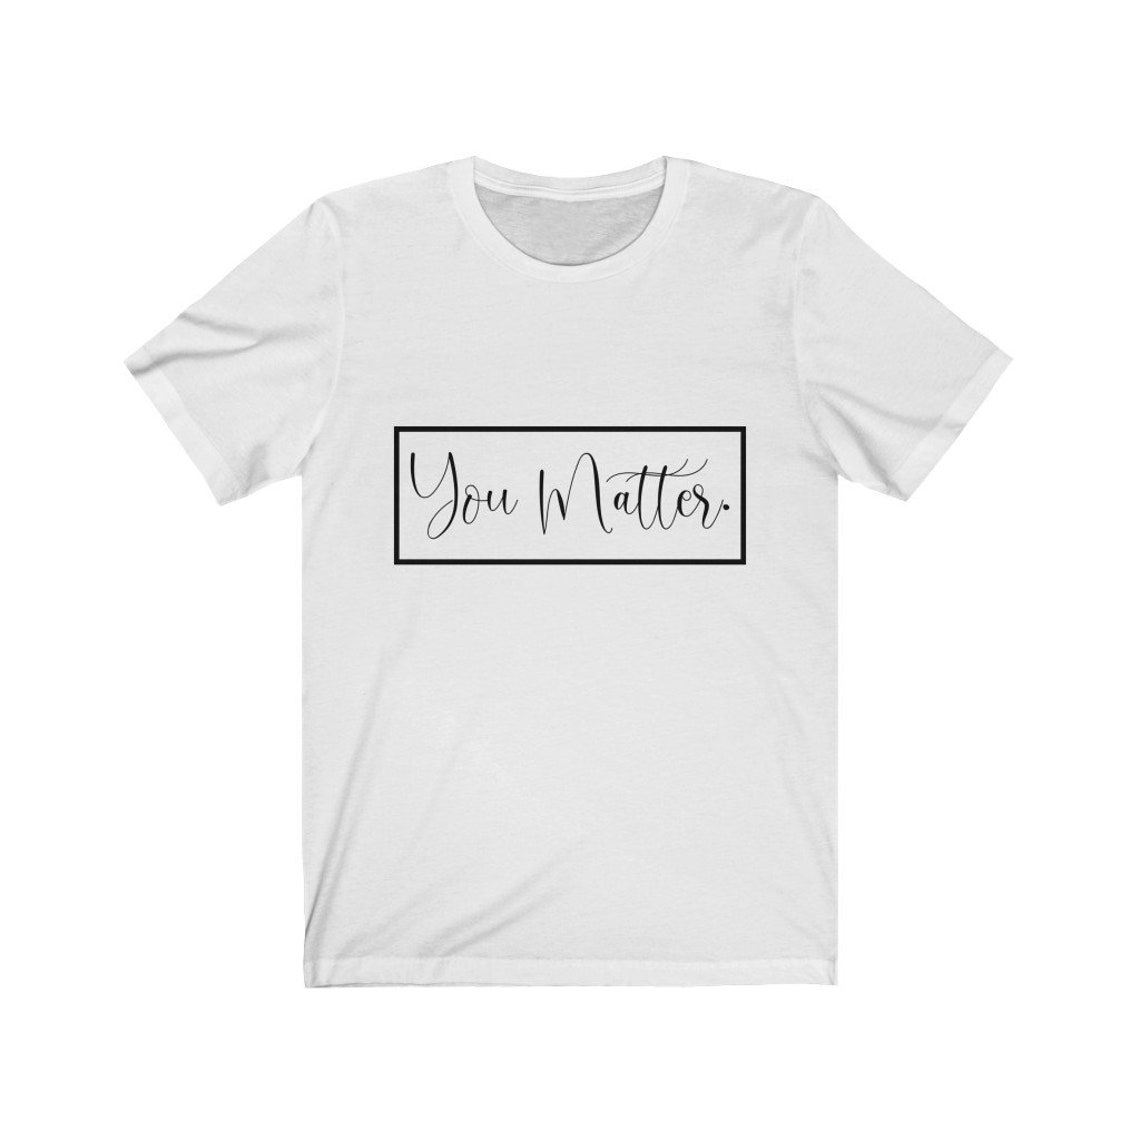 You Matter T-Shirt Inspirational Shirt Mental Health Shirt | Etsy